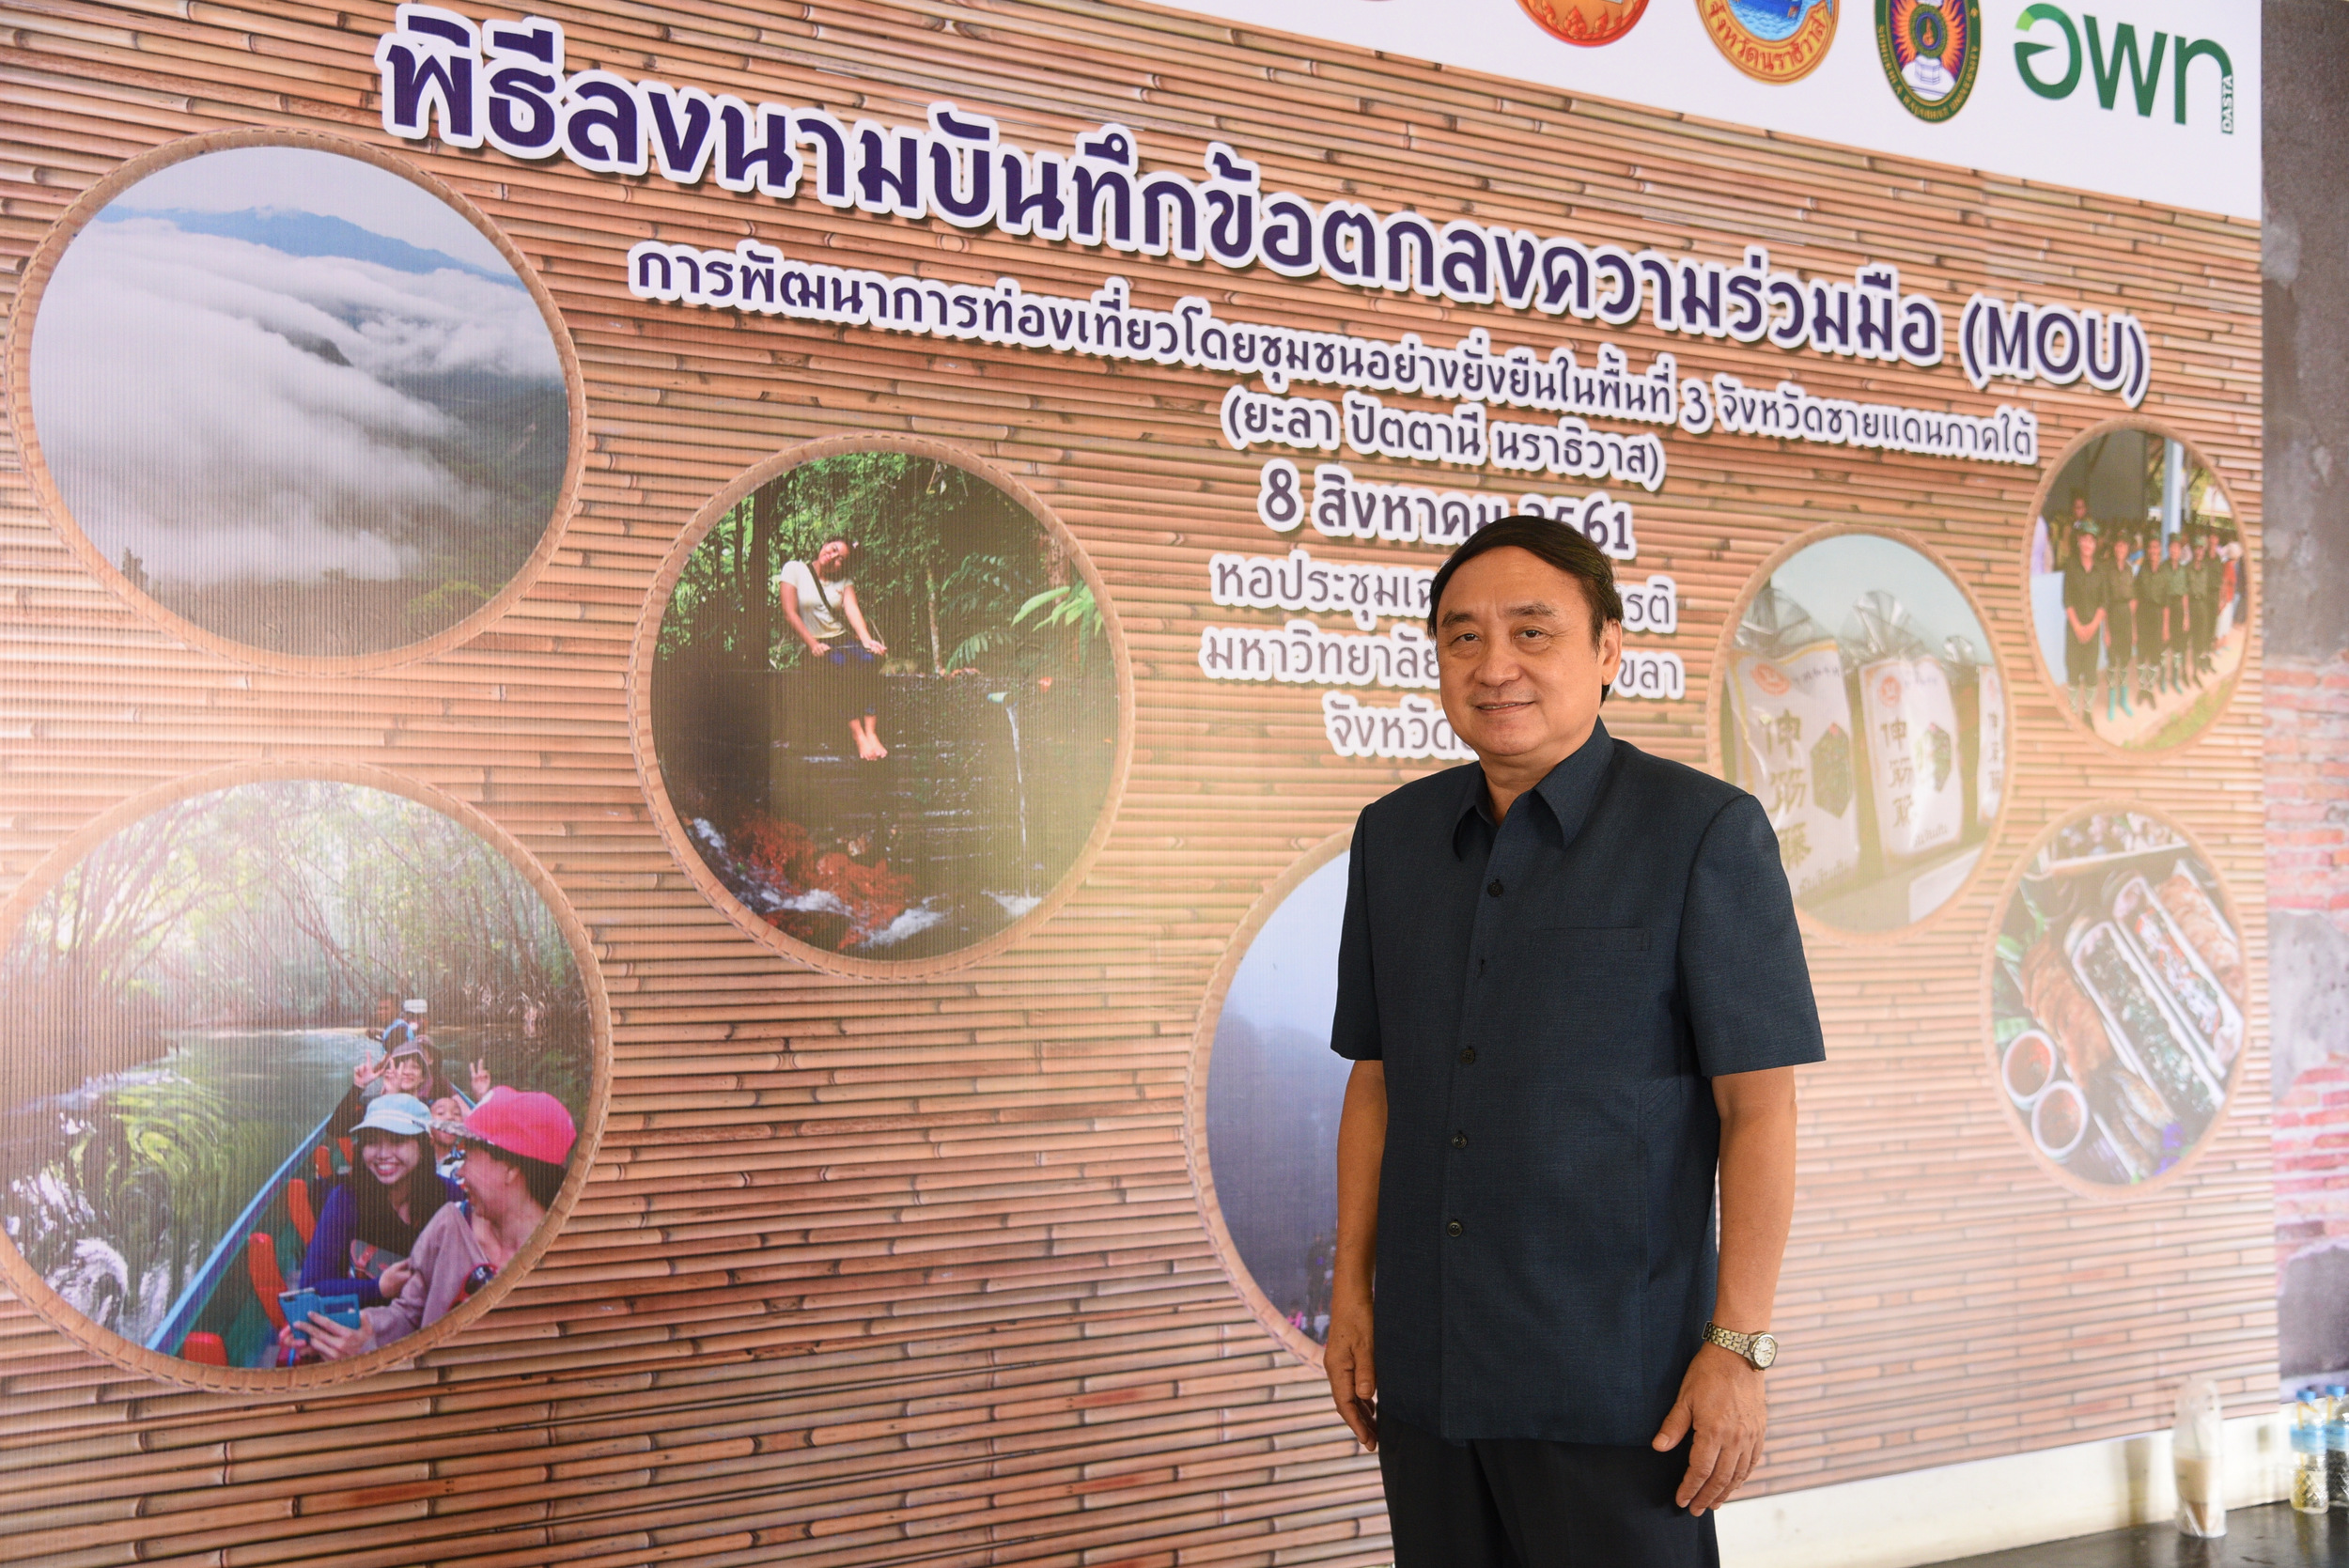 พัฒนาท่องเที่ยวชุมชน จังหวัดชายแดนใต้ thaihealth